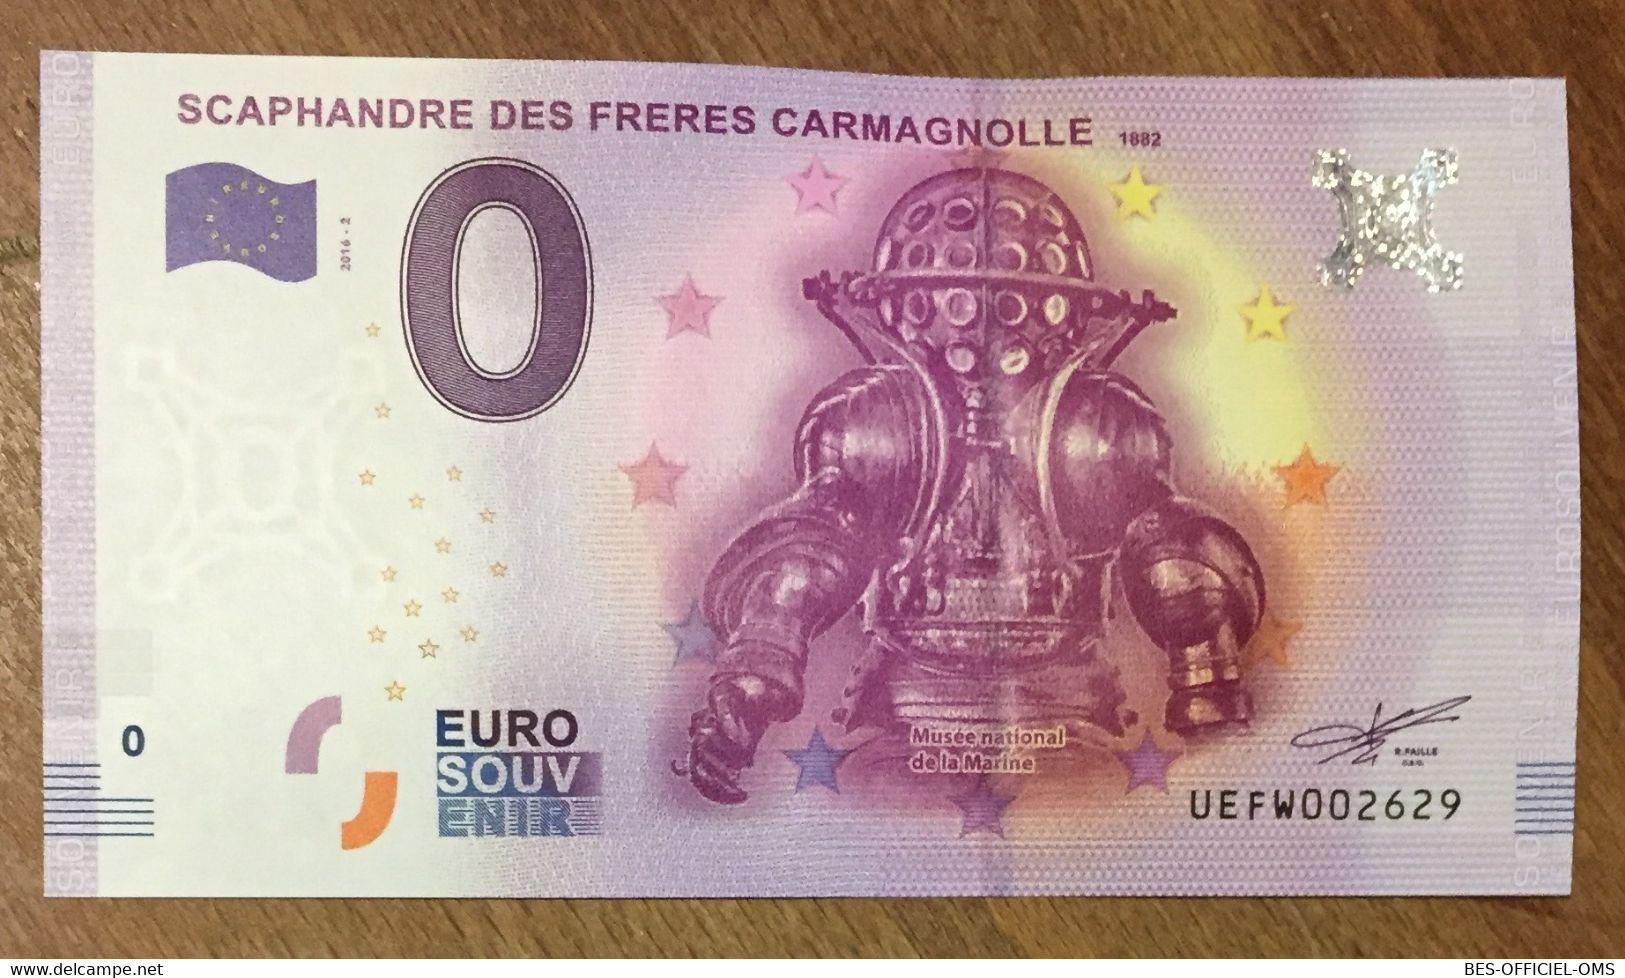 2016 BILLET 0 EURO SOUVENIR DPT 75 SCAPHANDRE DES FRÈRES CARMAGNOLLE ZERO 0 EURO SCHEIN BANKNOTE PAPER MONEY - Private Proofs / Unofficial